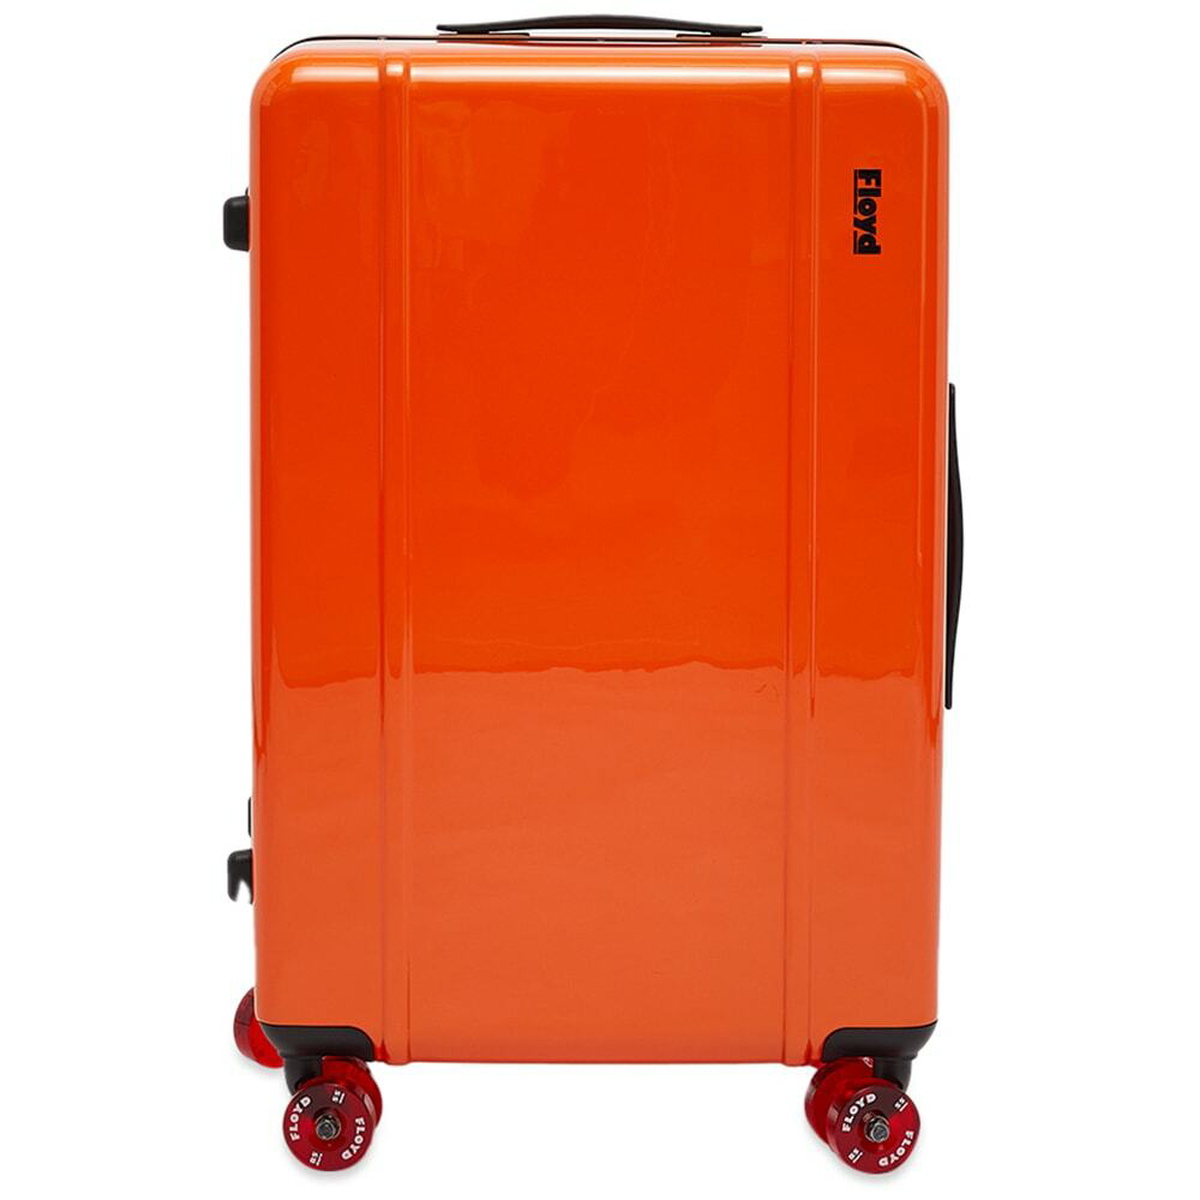 Floyd Check-In Luggage in Hot Orange Floyd